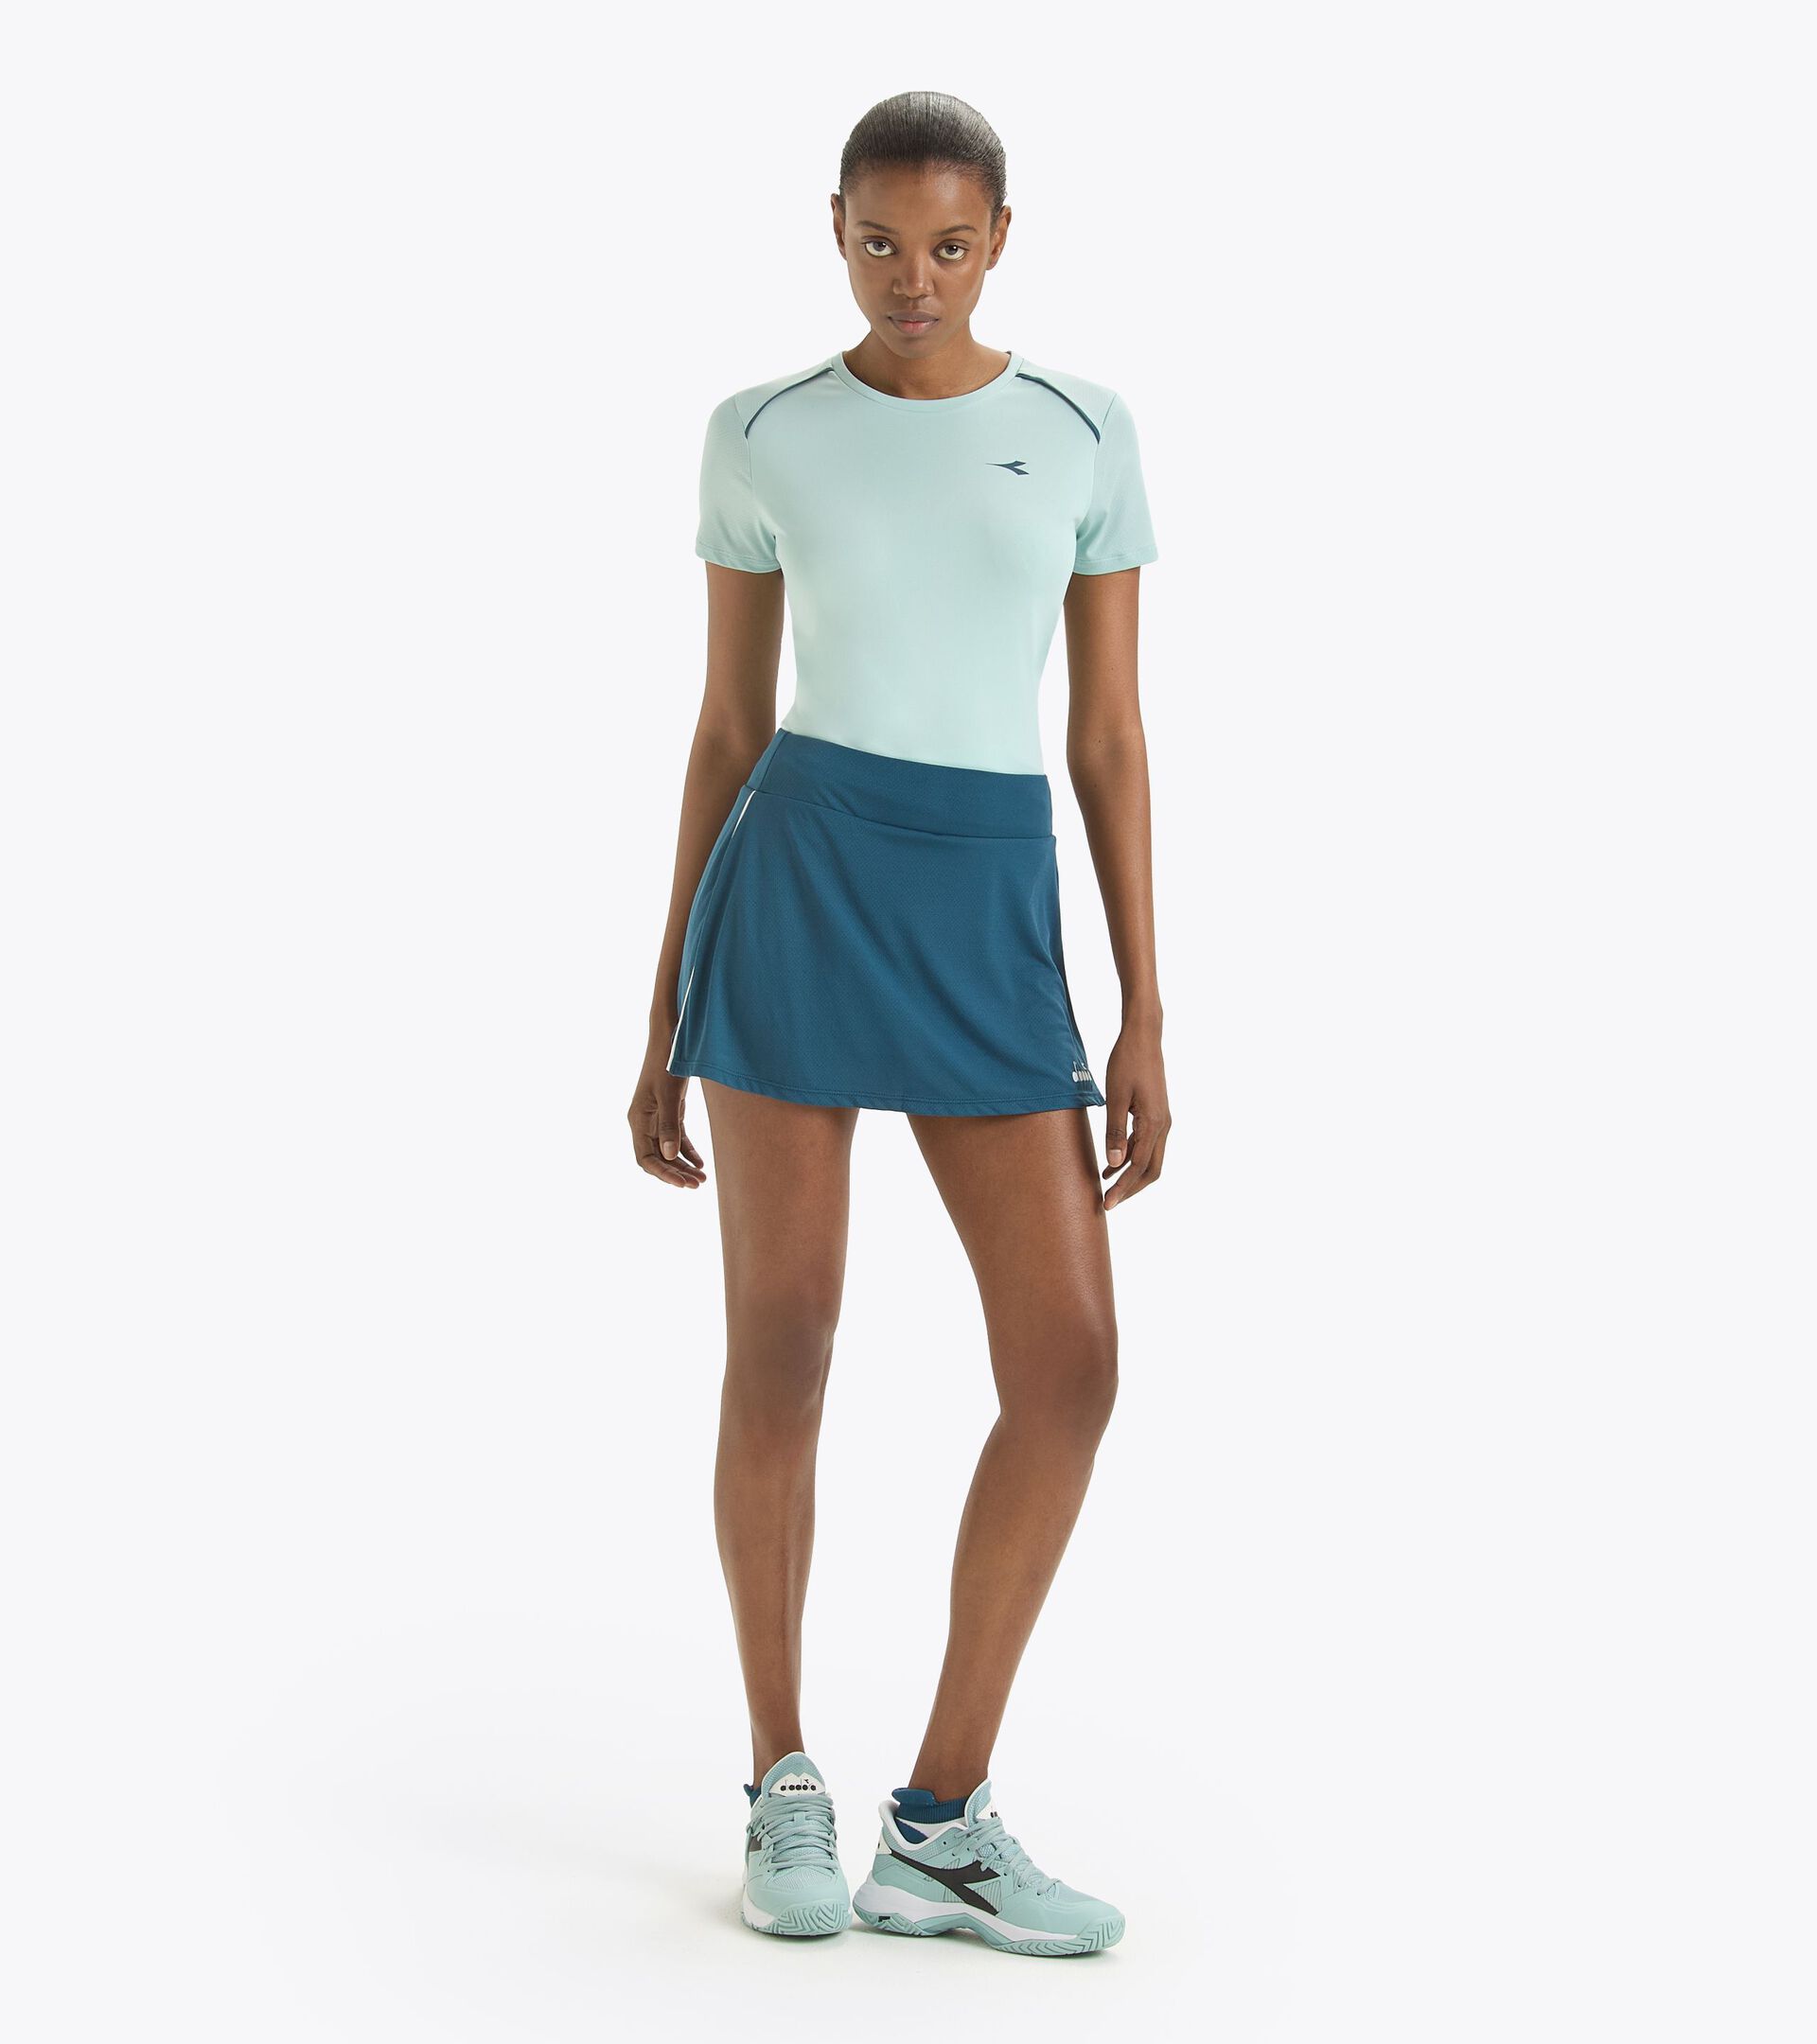 Tennis skirt - Women’s
 L. SKIRT CORE LEGION BLUE - Diadora